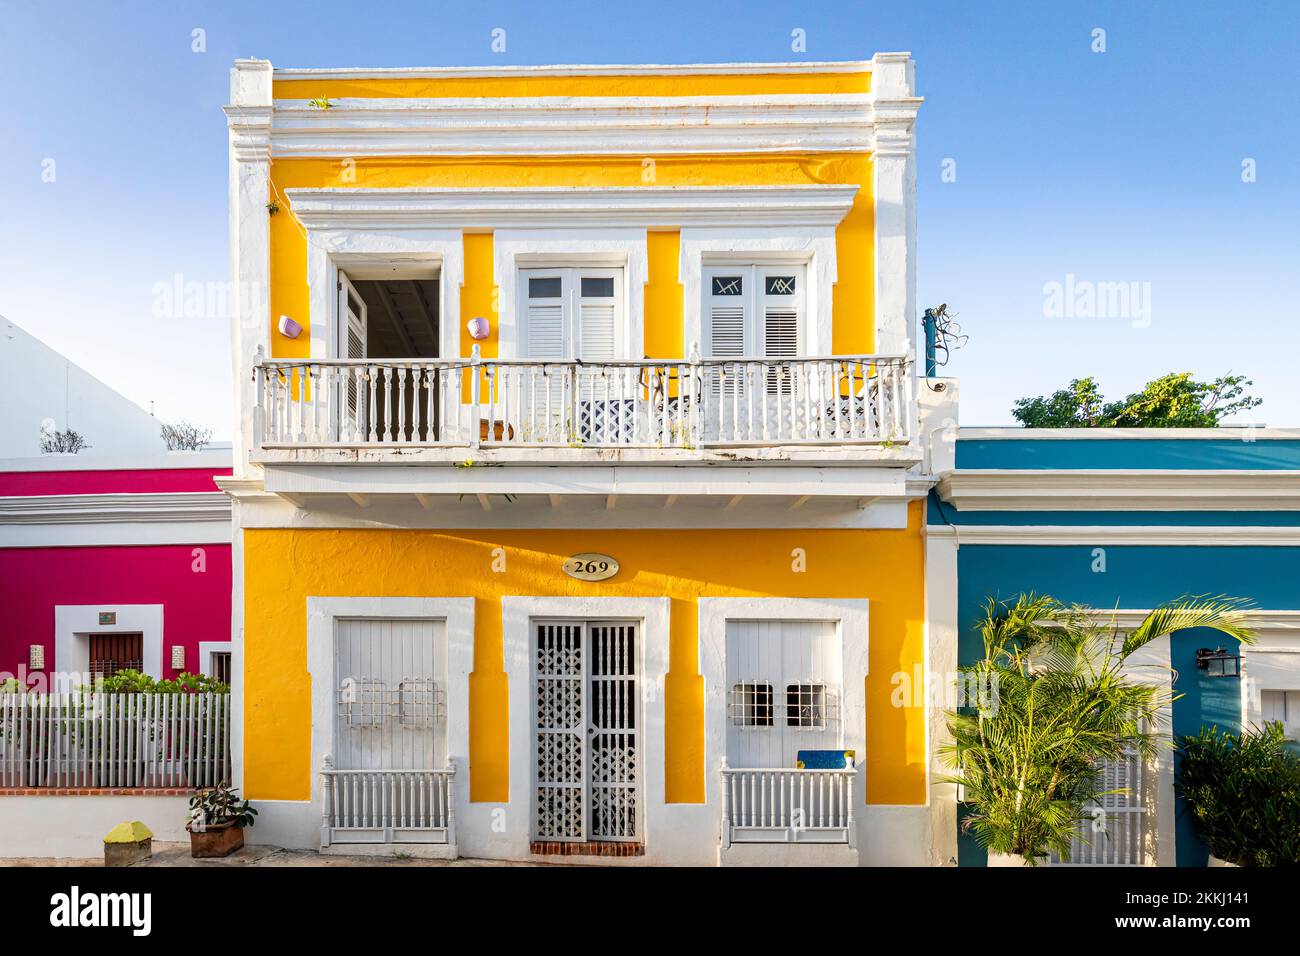 Bâtiments colorés le long de la rue San Sebastian dans le vieux San Juan, sur l'île tropicale des Caraïbes de Puerto Rico, Etats-Unis. Banque D'Images